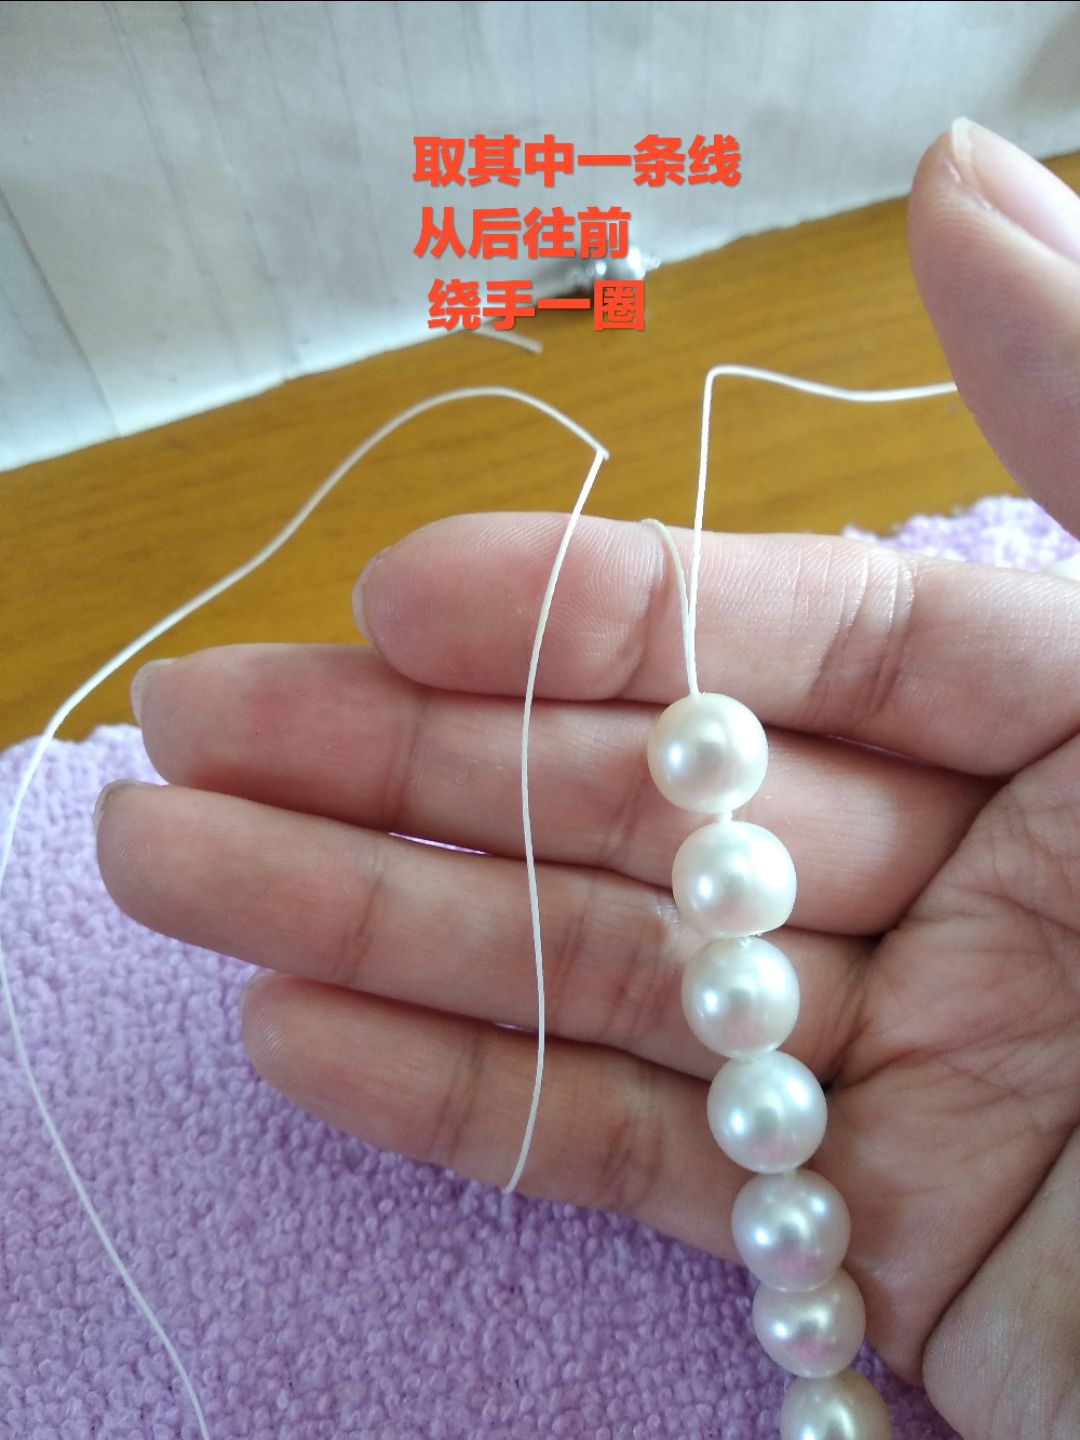 珍珠之间打结 一是为减少磨擦保护珍珠 也是为了 线断了珍珠散一地 哎呀呀呀😜😐